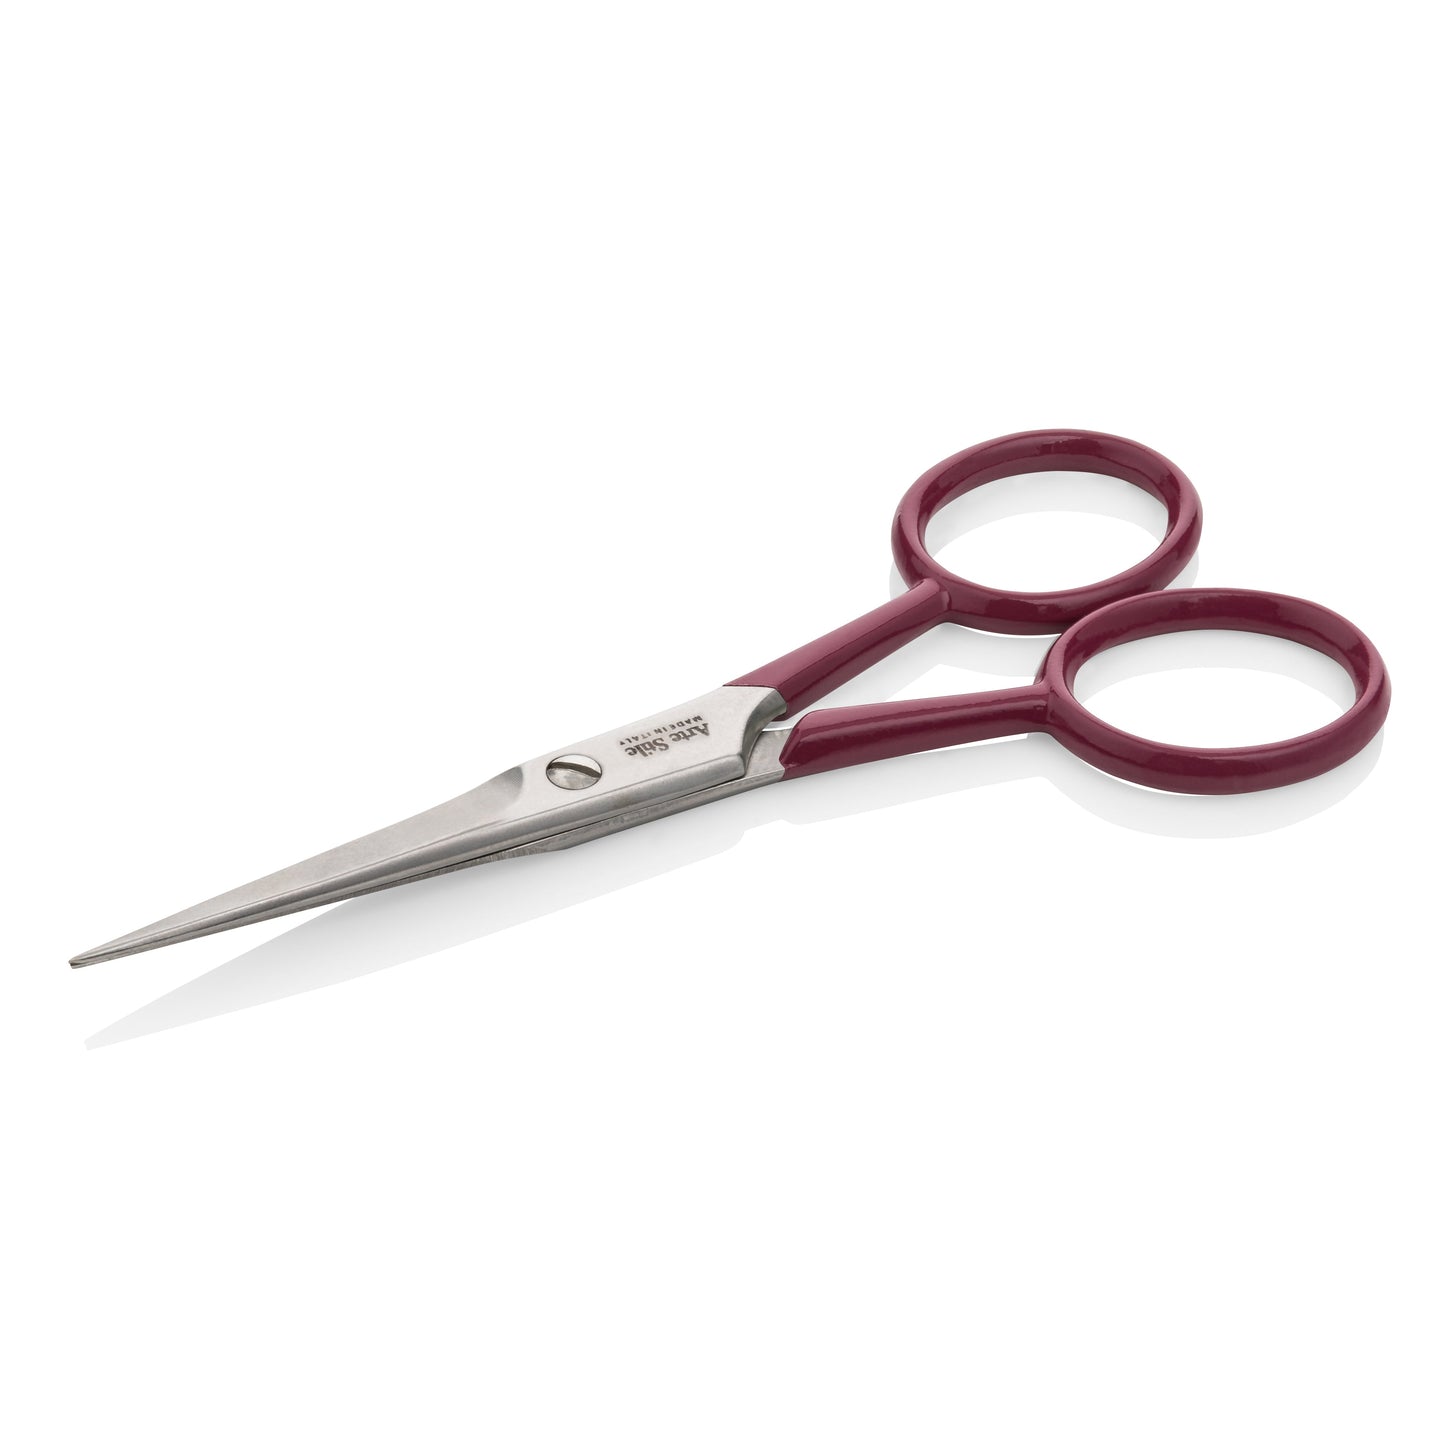 Pro Kit in Barolo: Slant & Point Tip Tweezers + Brow Scissors